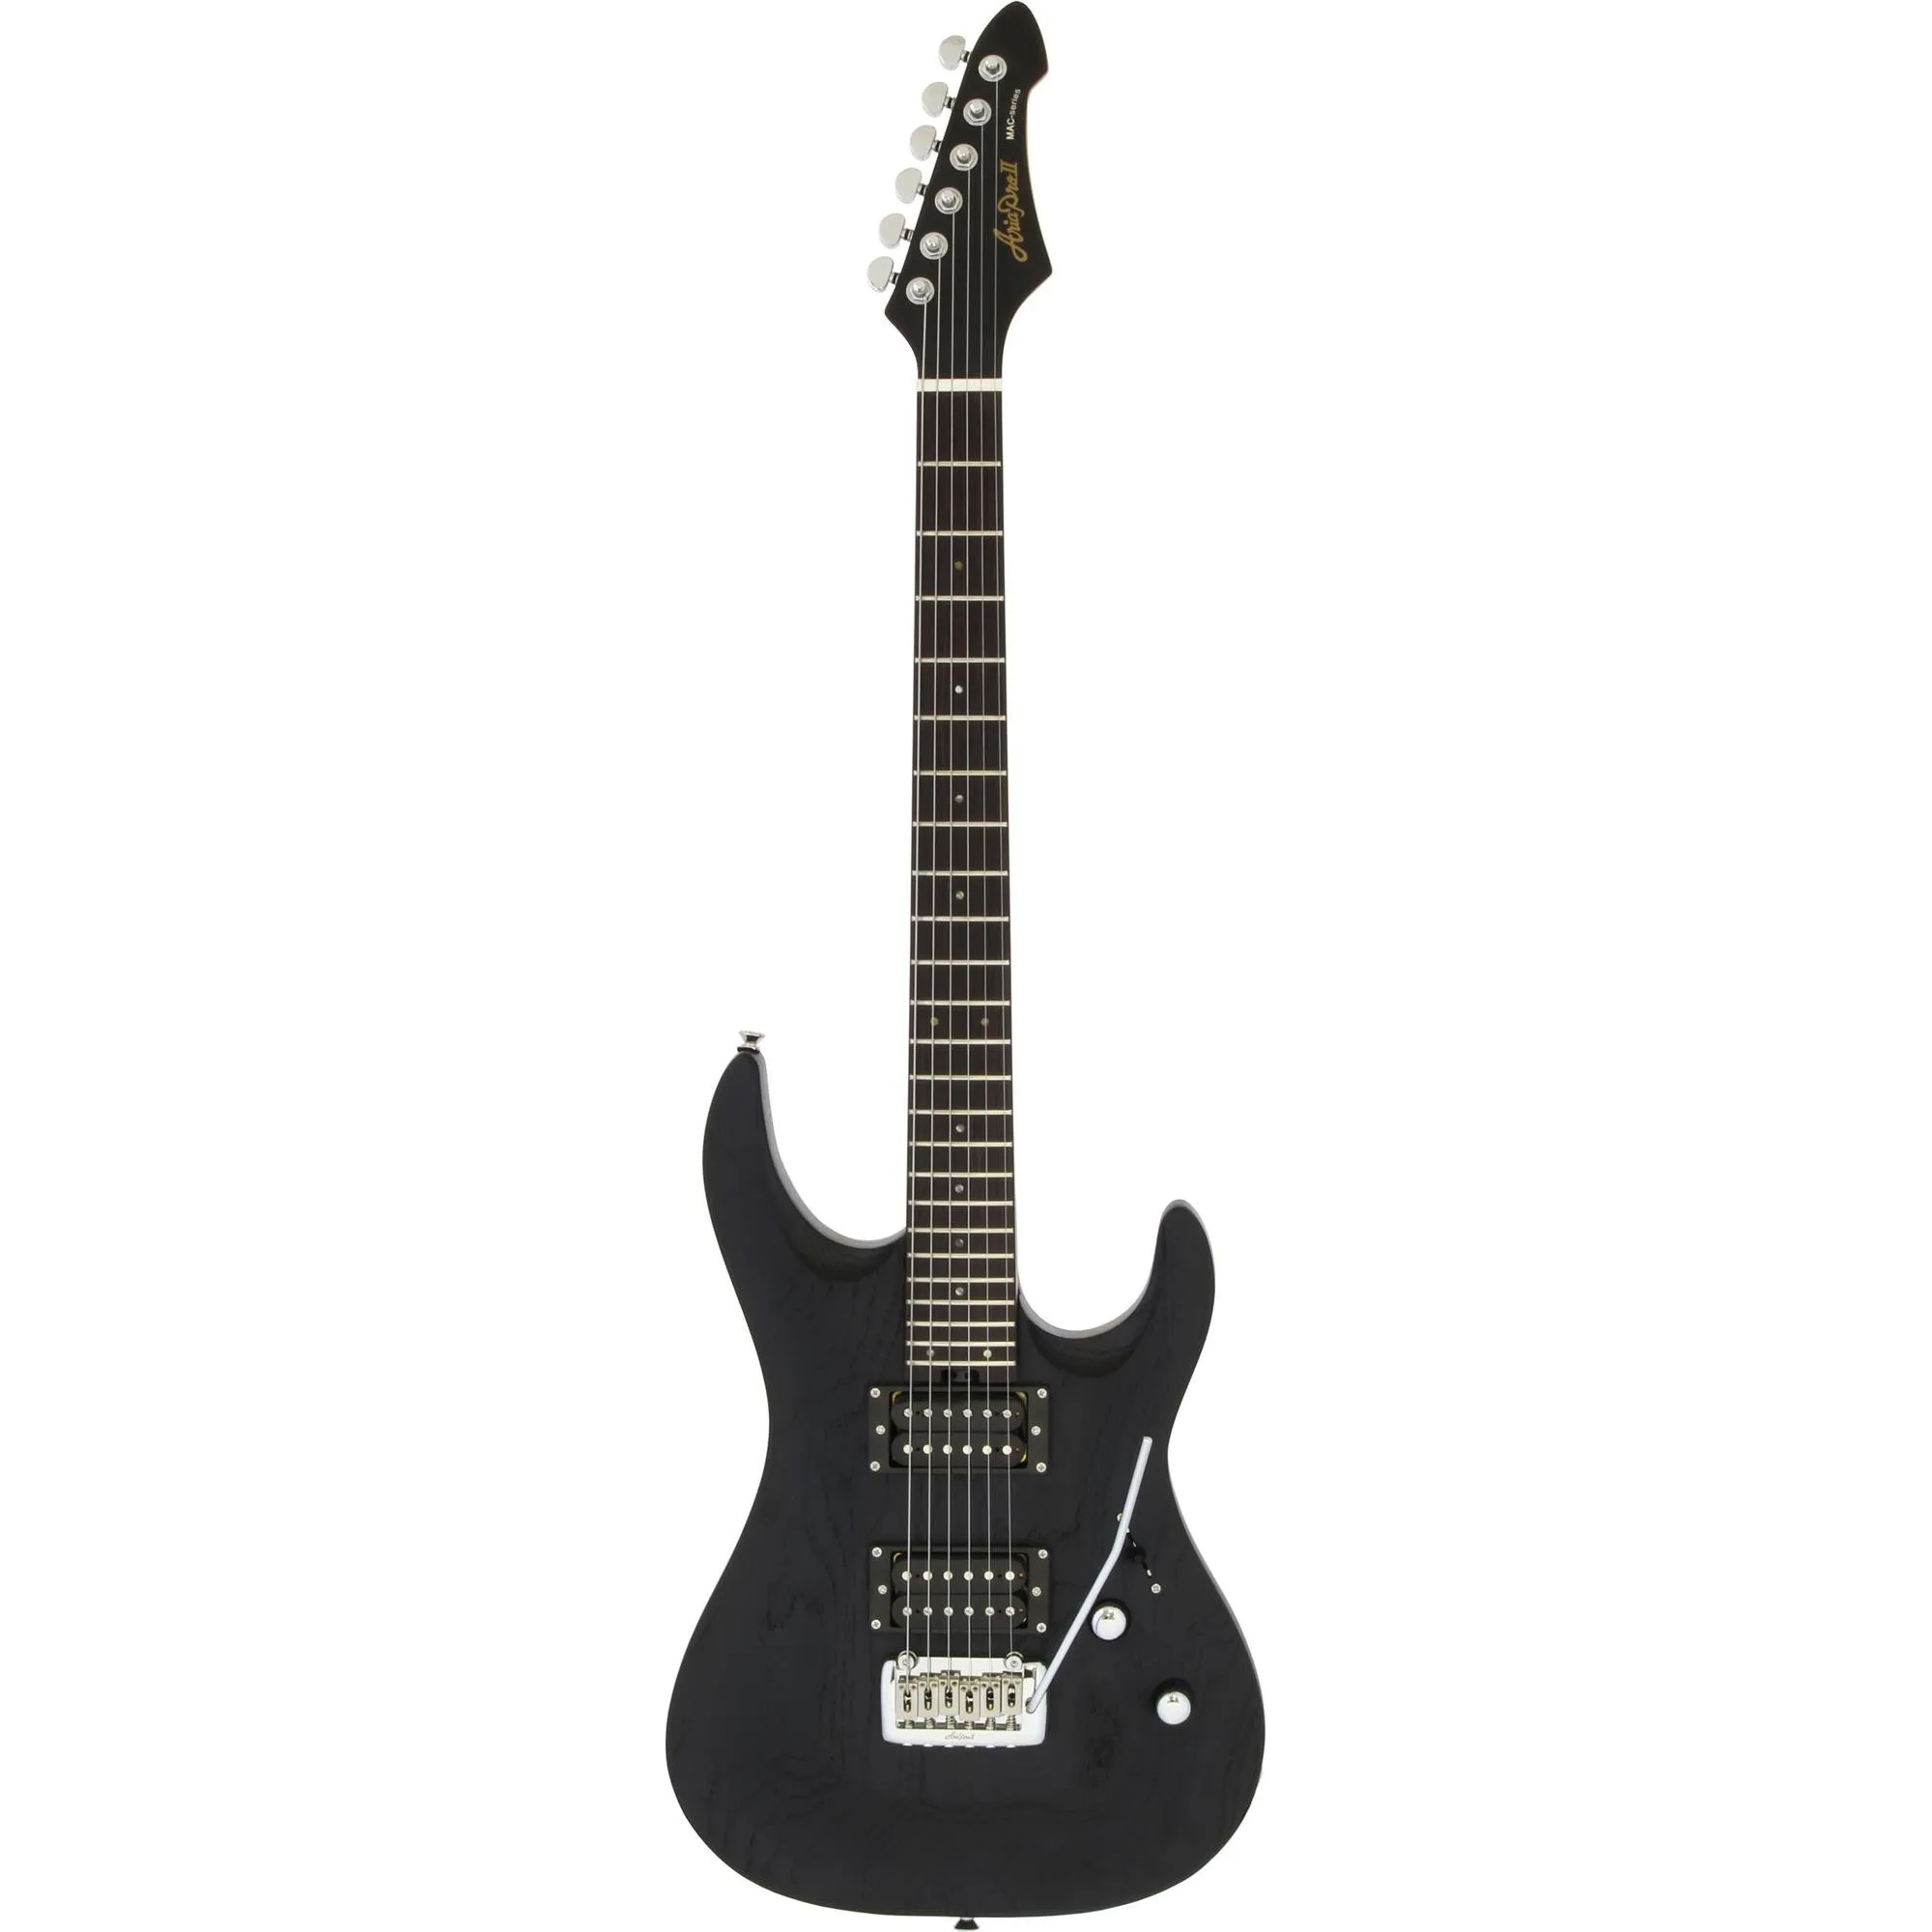 Guitarra Aria Pro II MAC-DLX Stained Black por 3.441,00 à vista no boleto/pix ou parcele em até 12x sem juros. Compre na loja Mundomax!